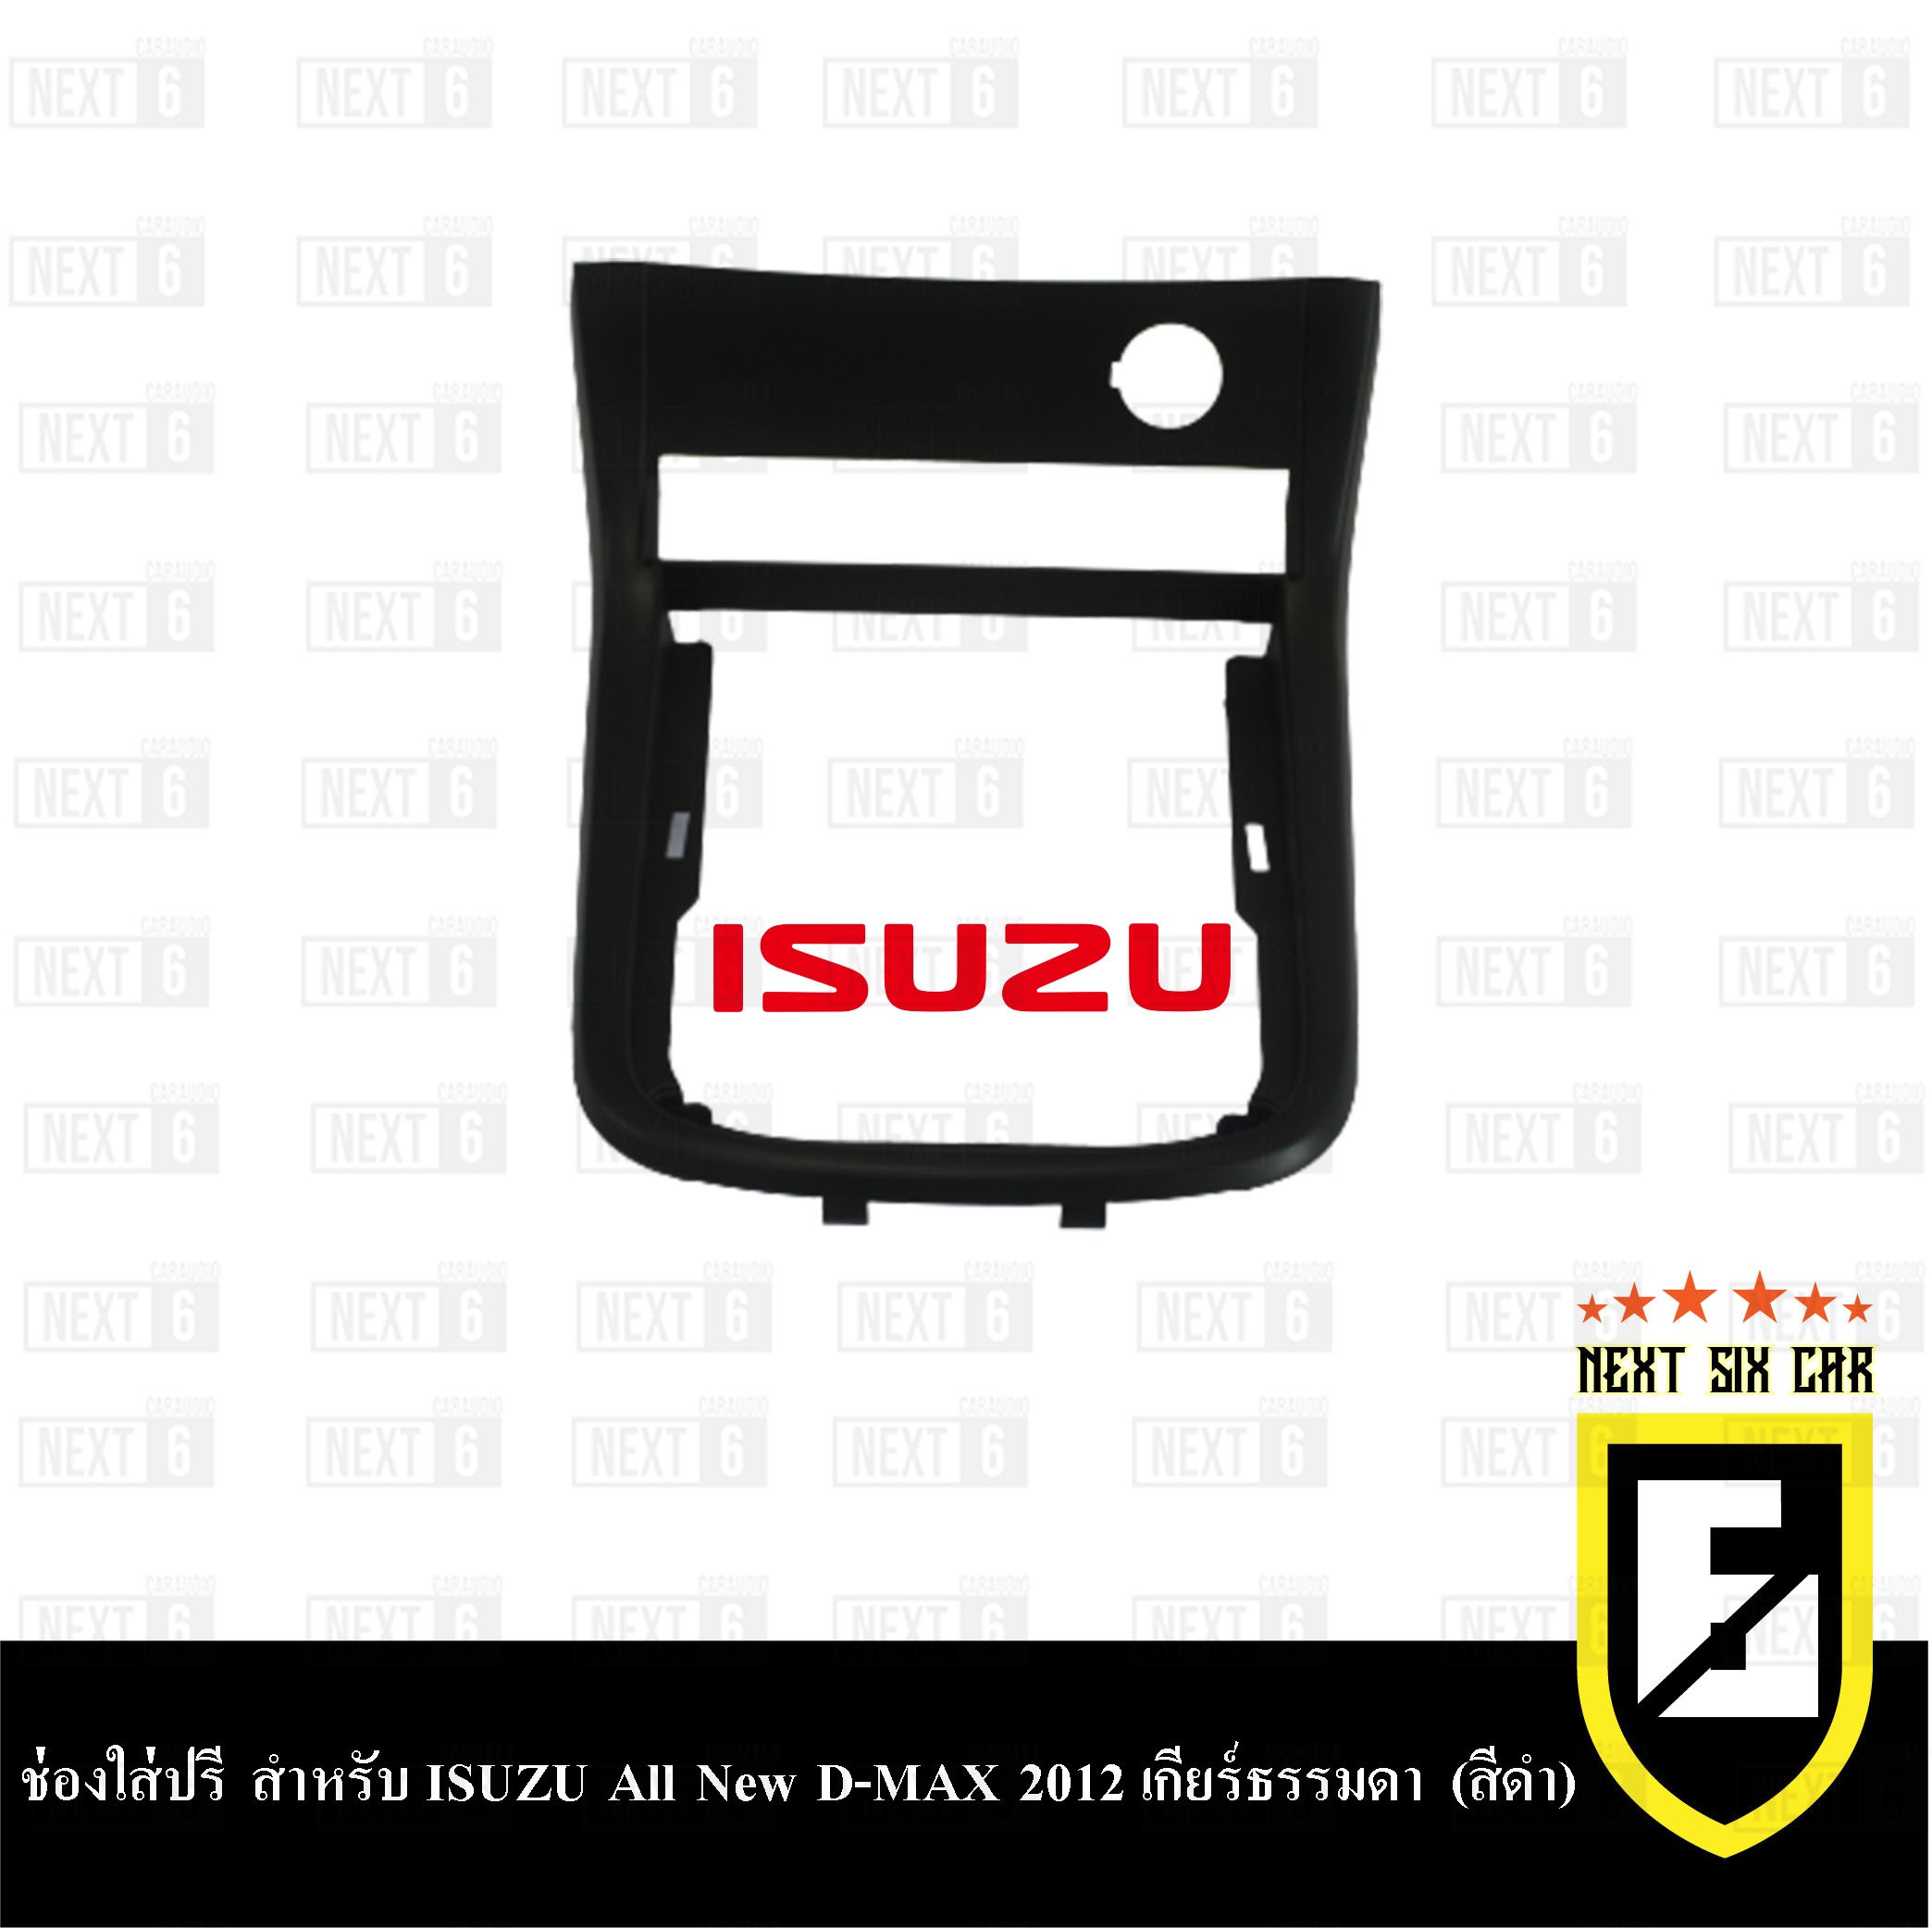 ช่องใส่ปรี สำหรับ ISUZU All New D-MAX 2012 เกียร์ธรรมดา (สีดำ)